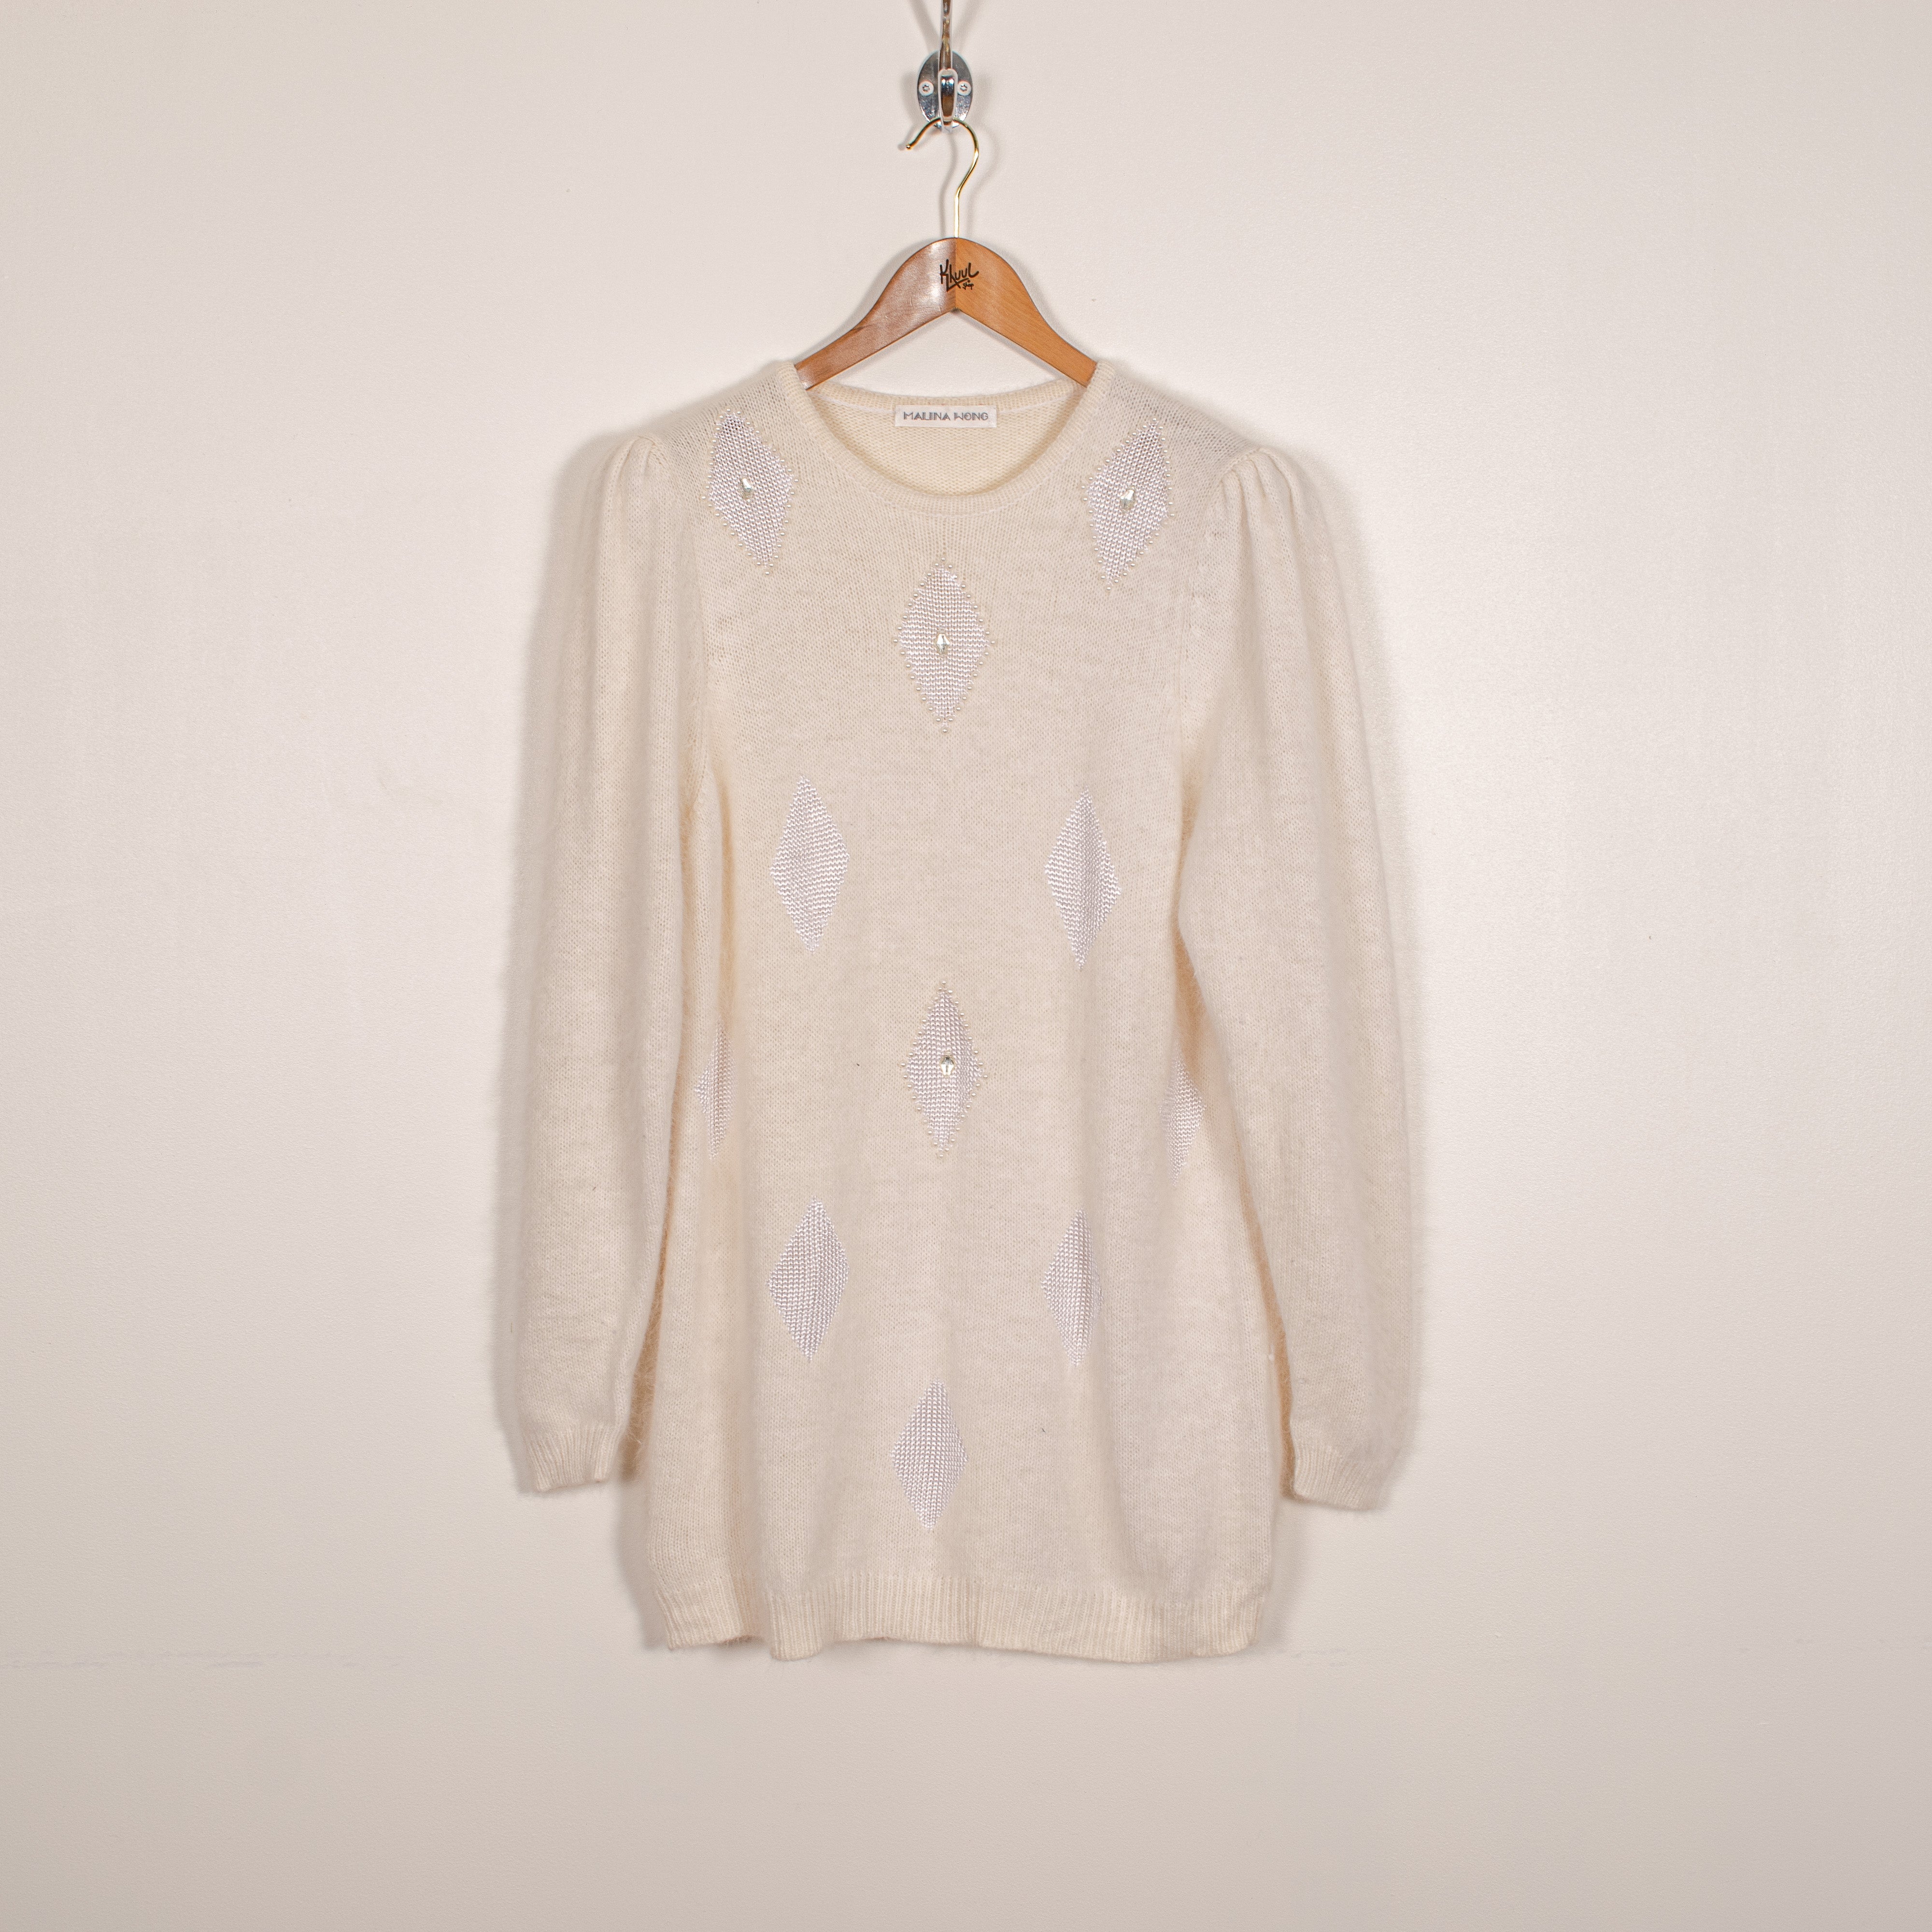 Malina Wong Vintage Angora Wool Blend Pearl Rhomb Pattern White Knit Sweater Women's XL